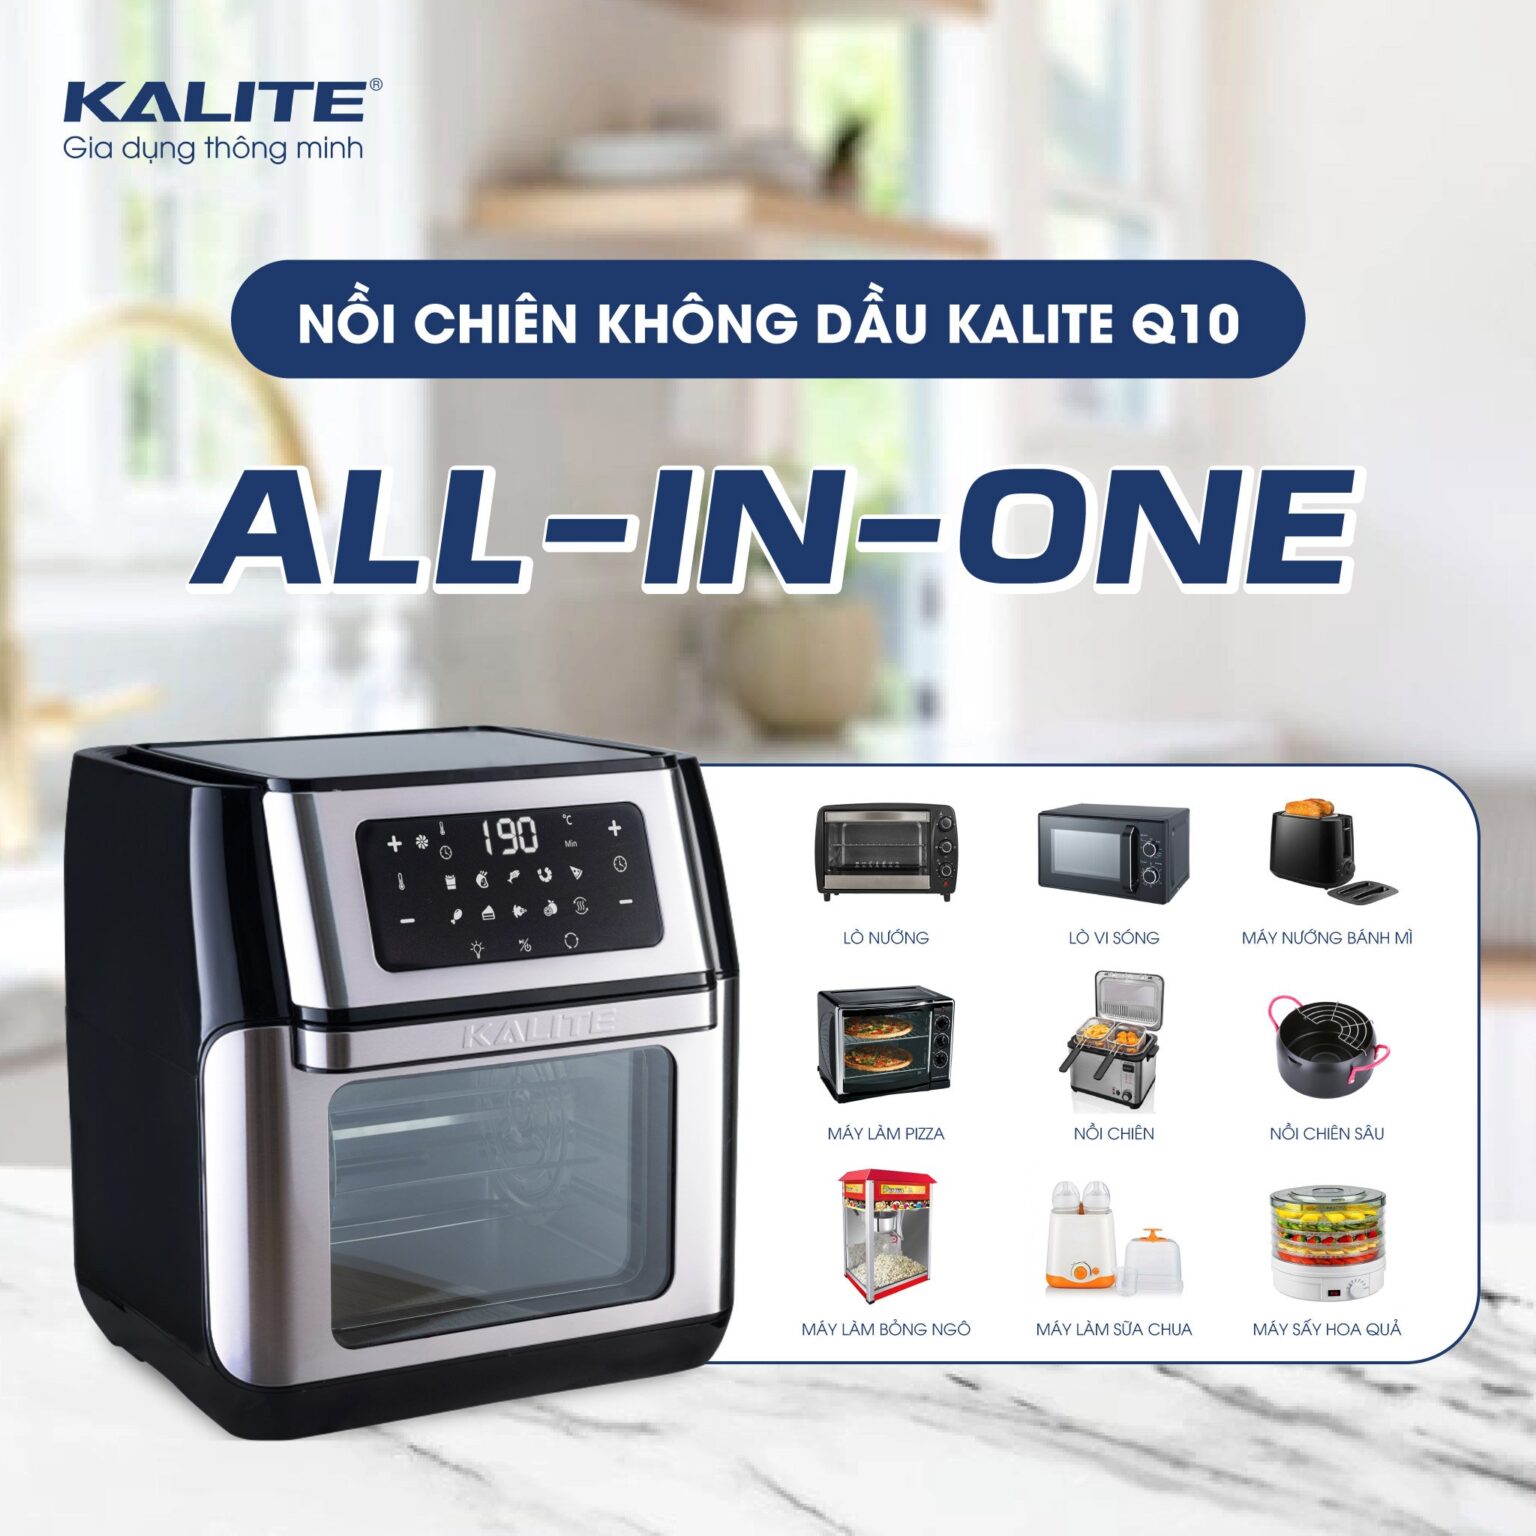 Nồi chiên không dầu Kalite Q10 thay thế 9 thiết bị nhà bếp